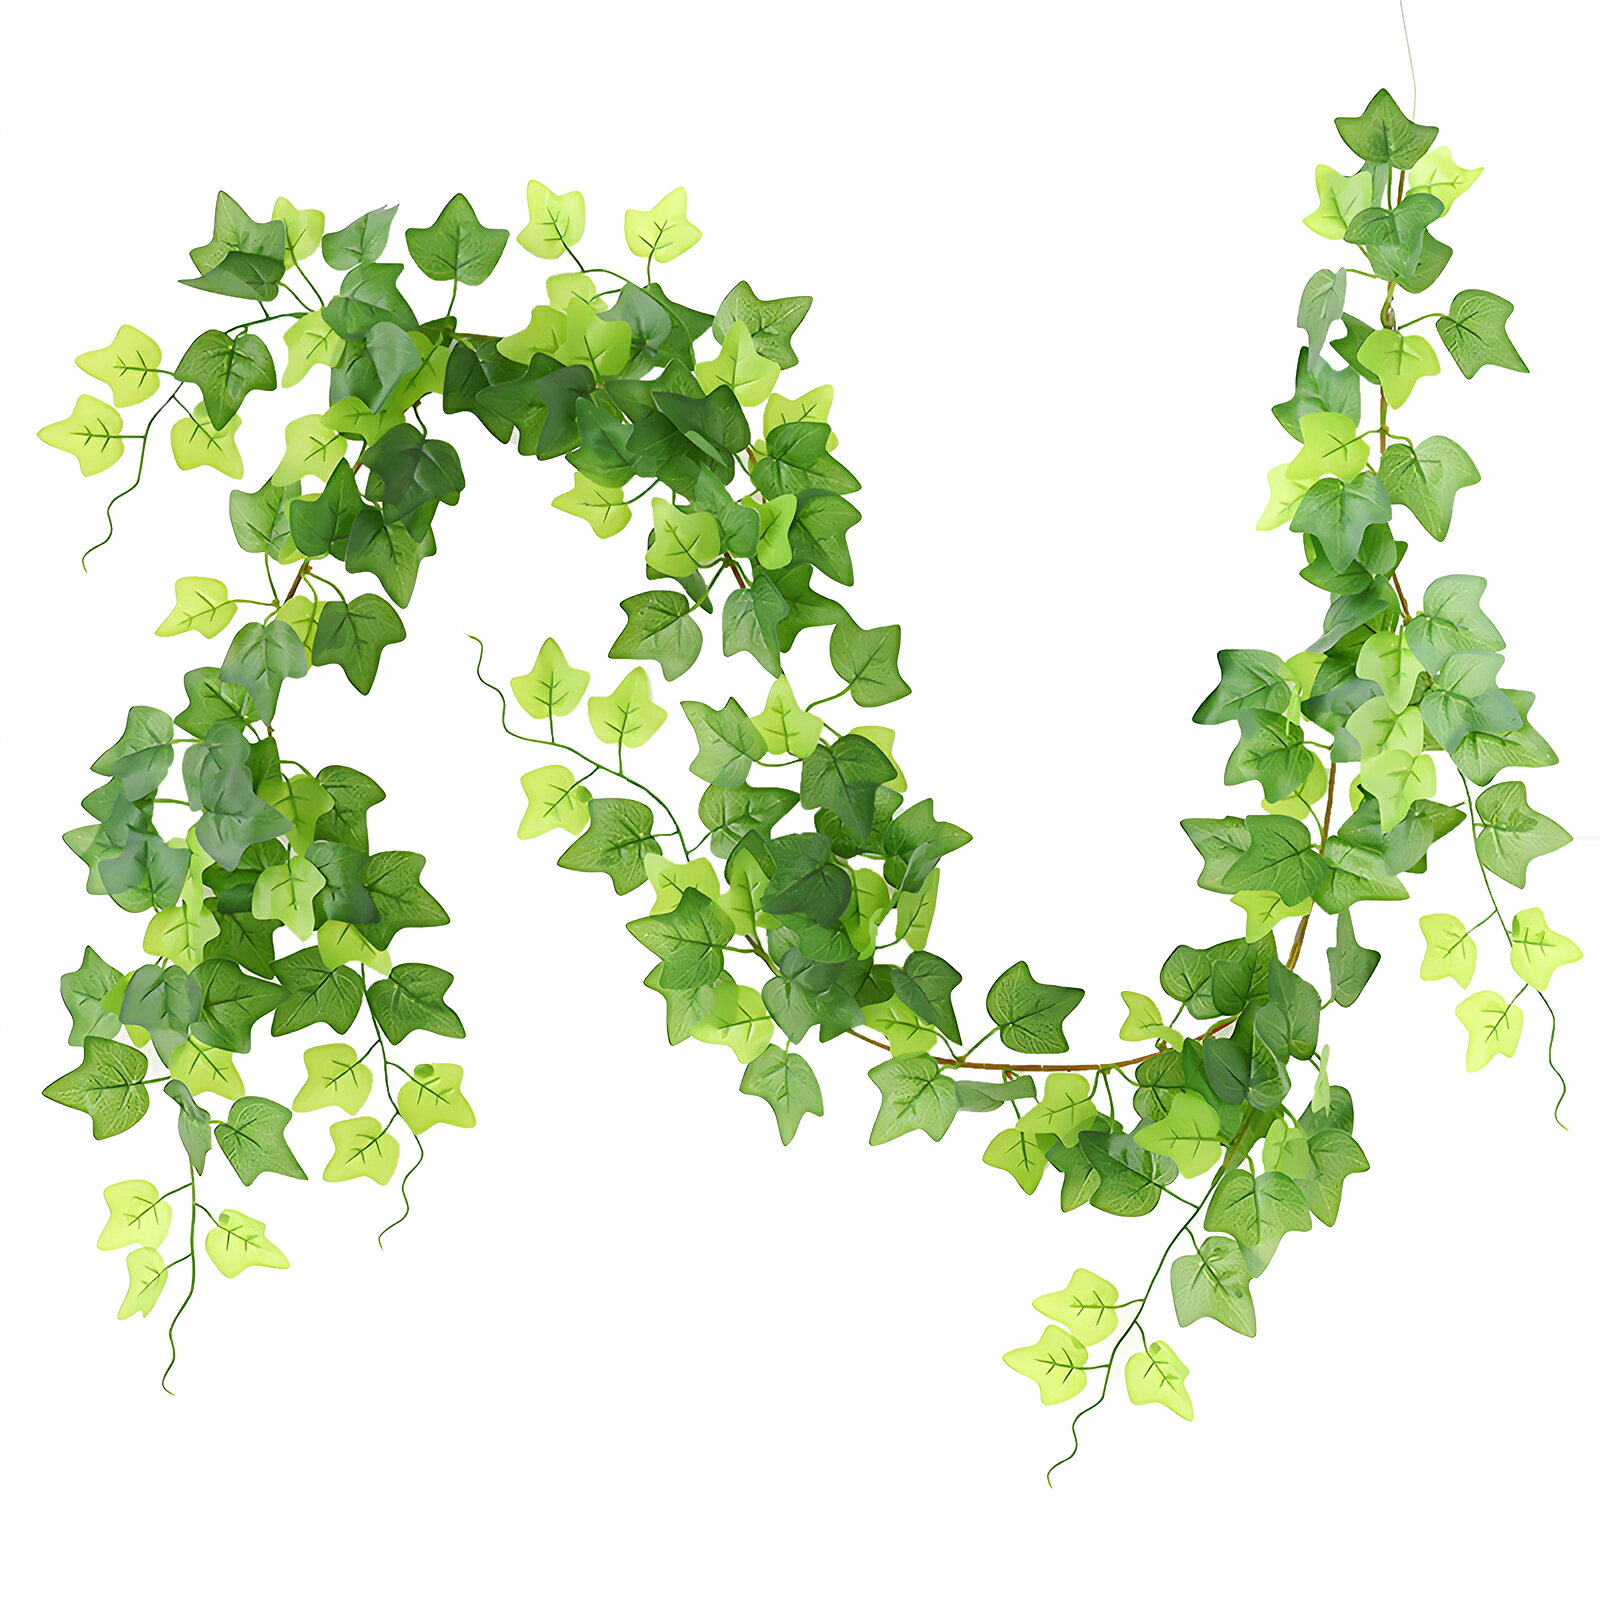 WillingYou グリーン 観葉植物 アイビー ポトス 1本 180cm フェイクグリーン 吊り下げ 造花 藤 緑 葉 壁掛け 吊りのインテリア飾り人工植物 枯れない インテリアグリーン